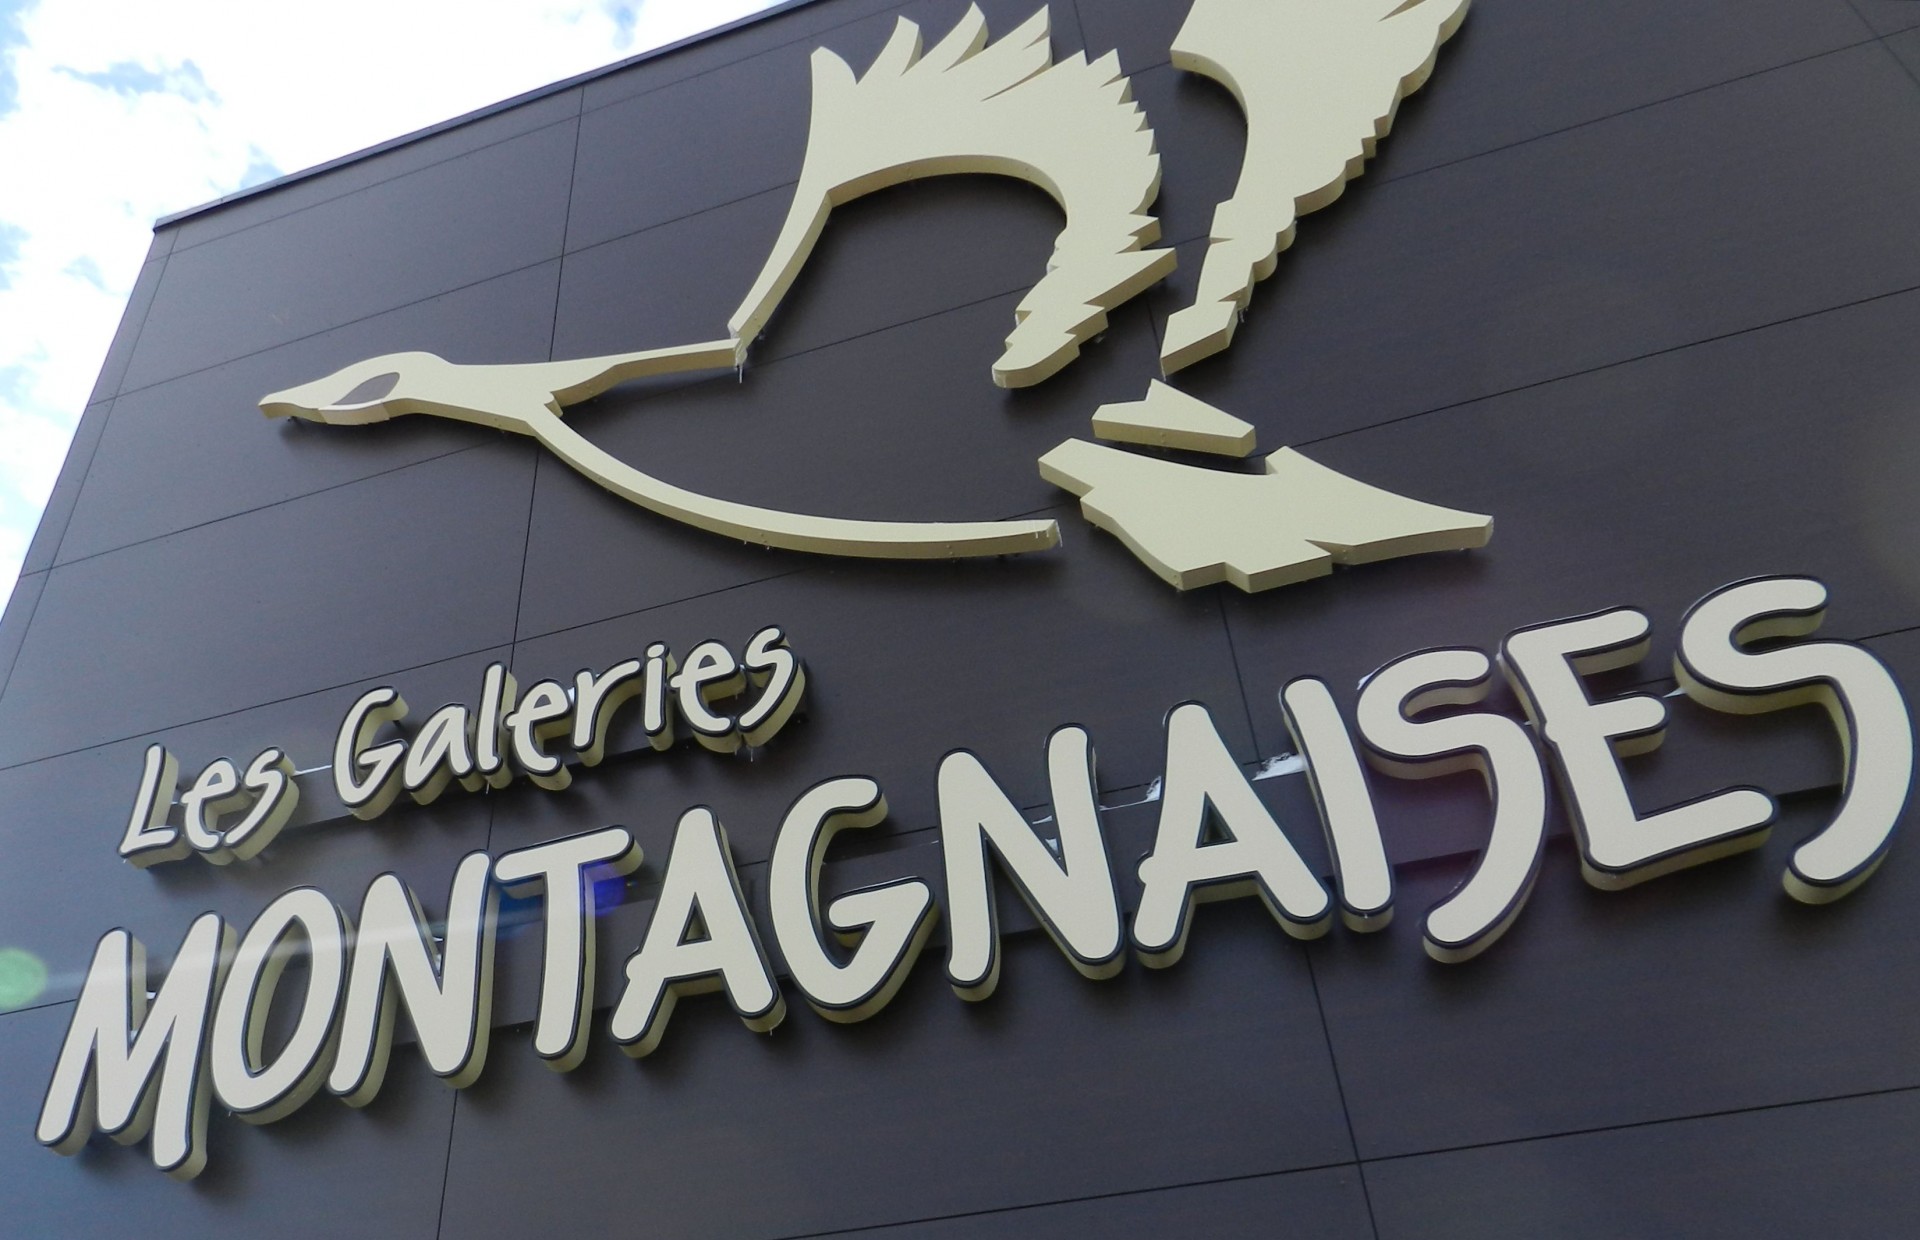 Galleries Montagnaises